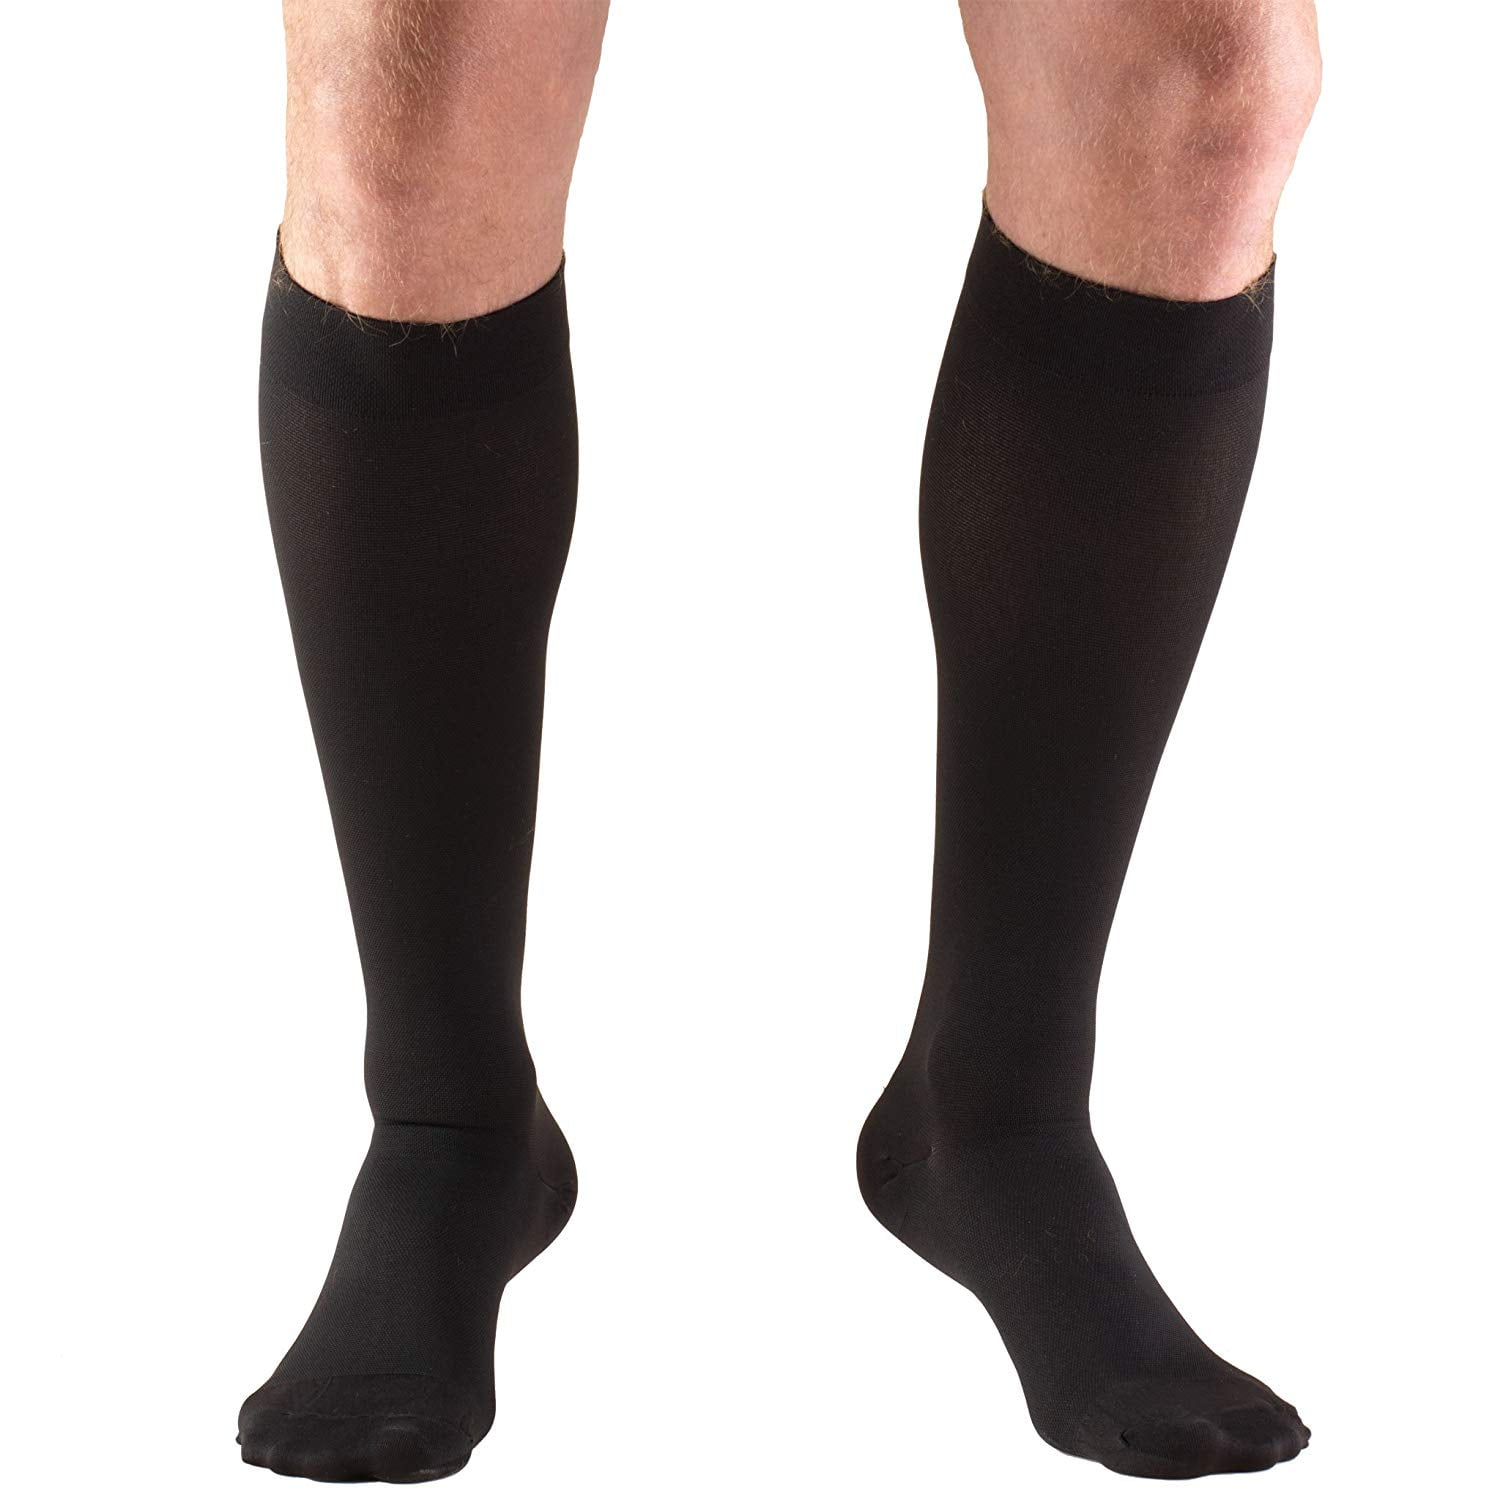 Truform Mens Knee High 15-20 mmHg Compression Dress Socks Pack of 2 Medium Tan